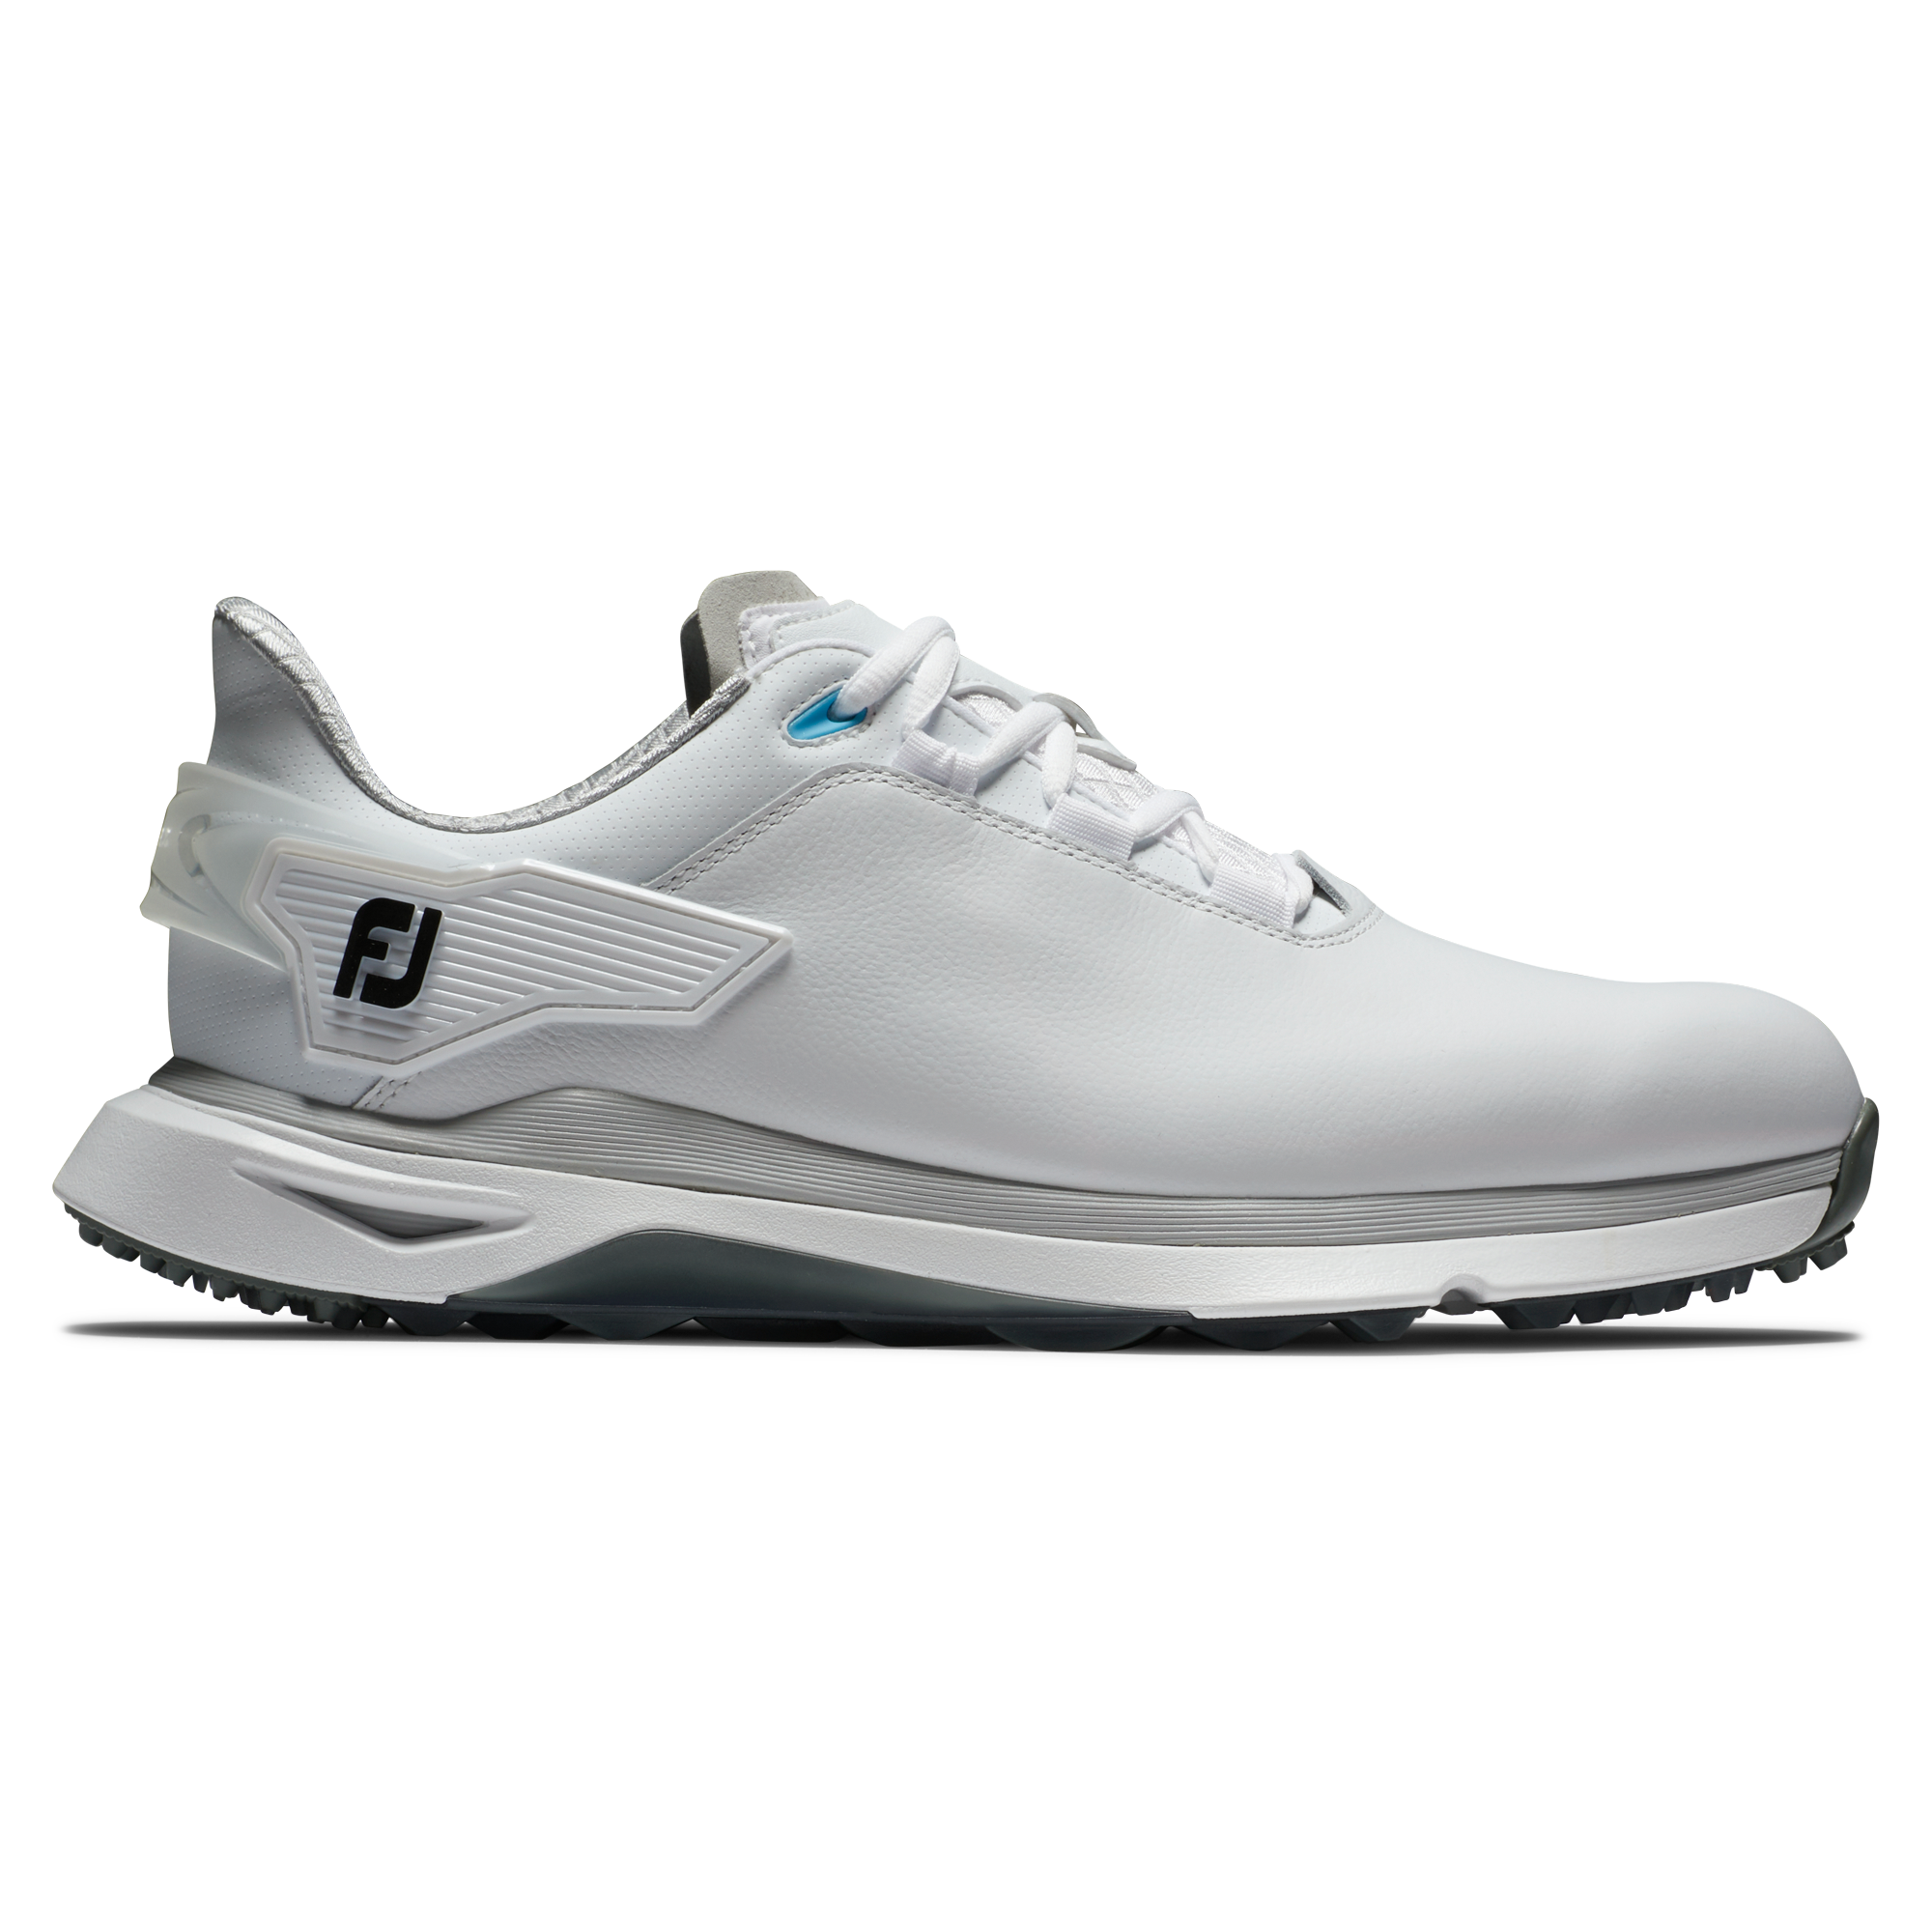 FootJoy Pro/SLX Wide pánské golfové boty, bílé/šedé, vel. 11 UK